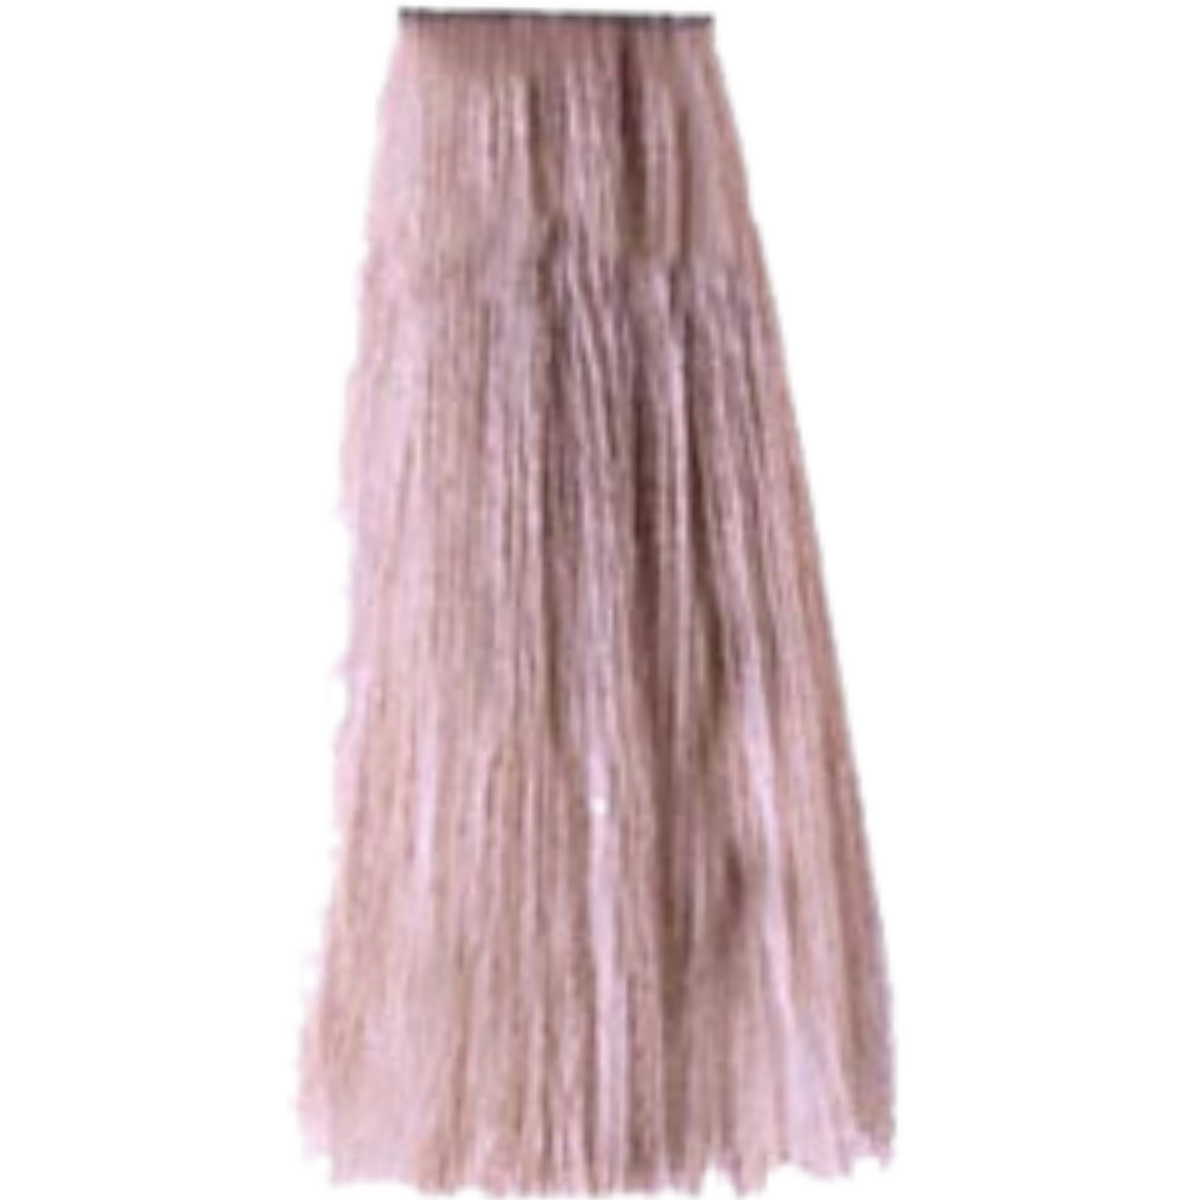 צבע שיער 9.22 VIOLET IRISEE פארמויטה FarmaVita צבע לשיער 60 גרם